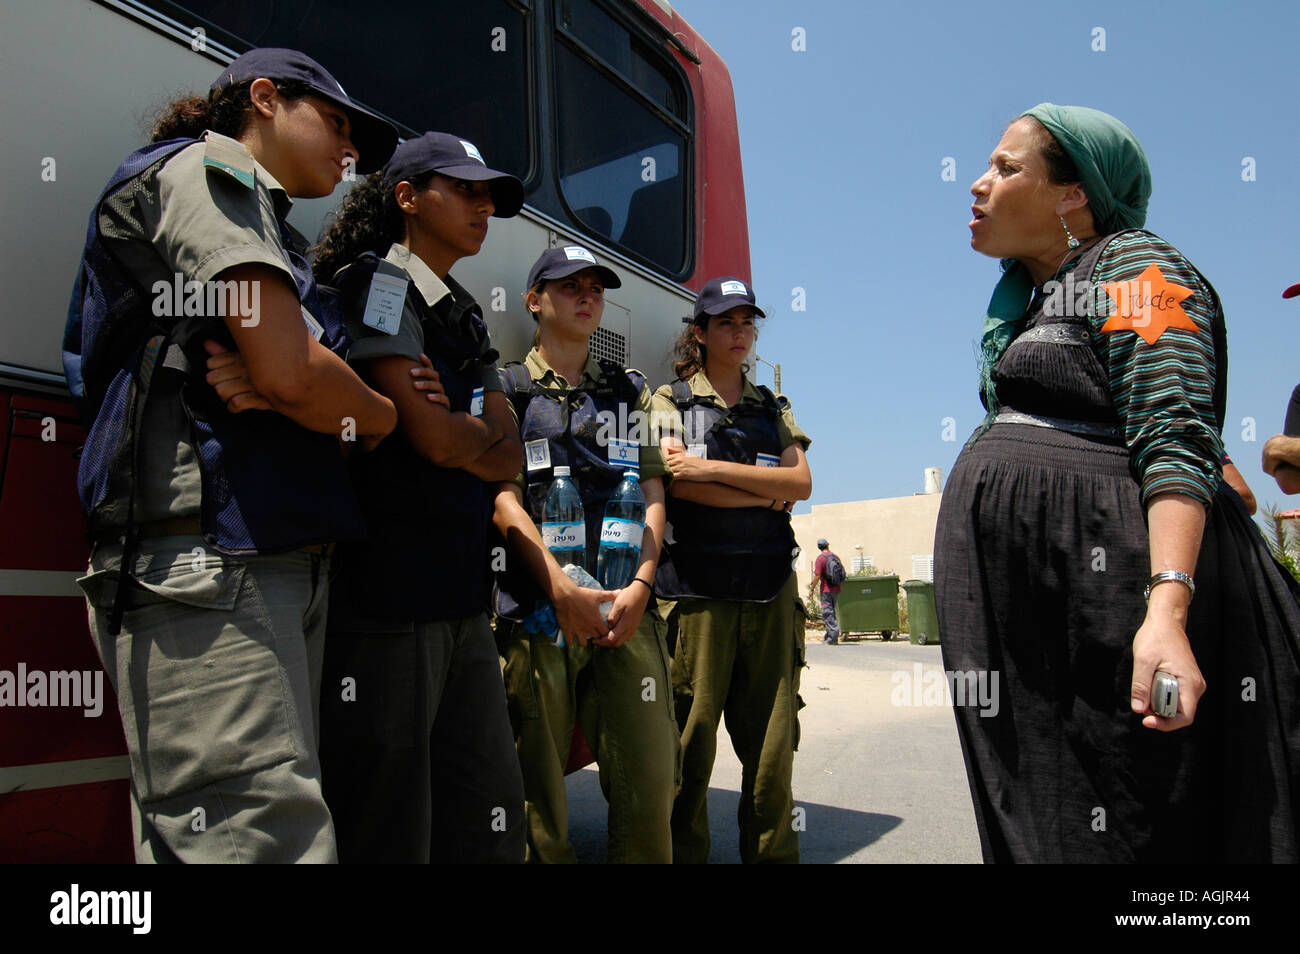 Eine jüdische Siedler tragen gelben Davidstern mit "Jude" darauf geschrieben konfrontiert israelischen Soldat während der Räumung der jüdischen Siedlungen aus Gaza-Streifen Stockfoto